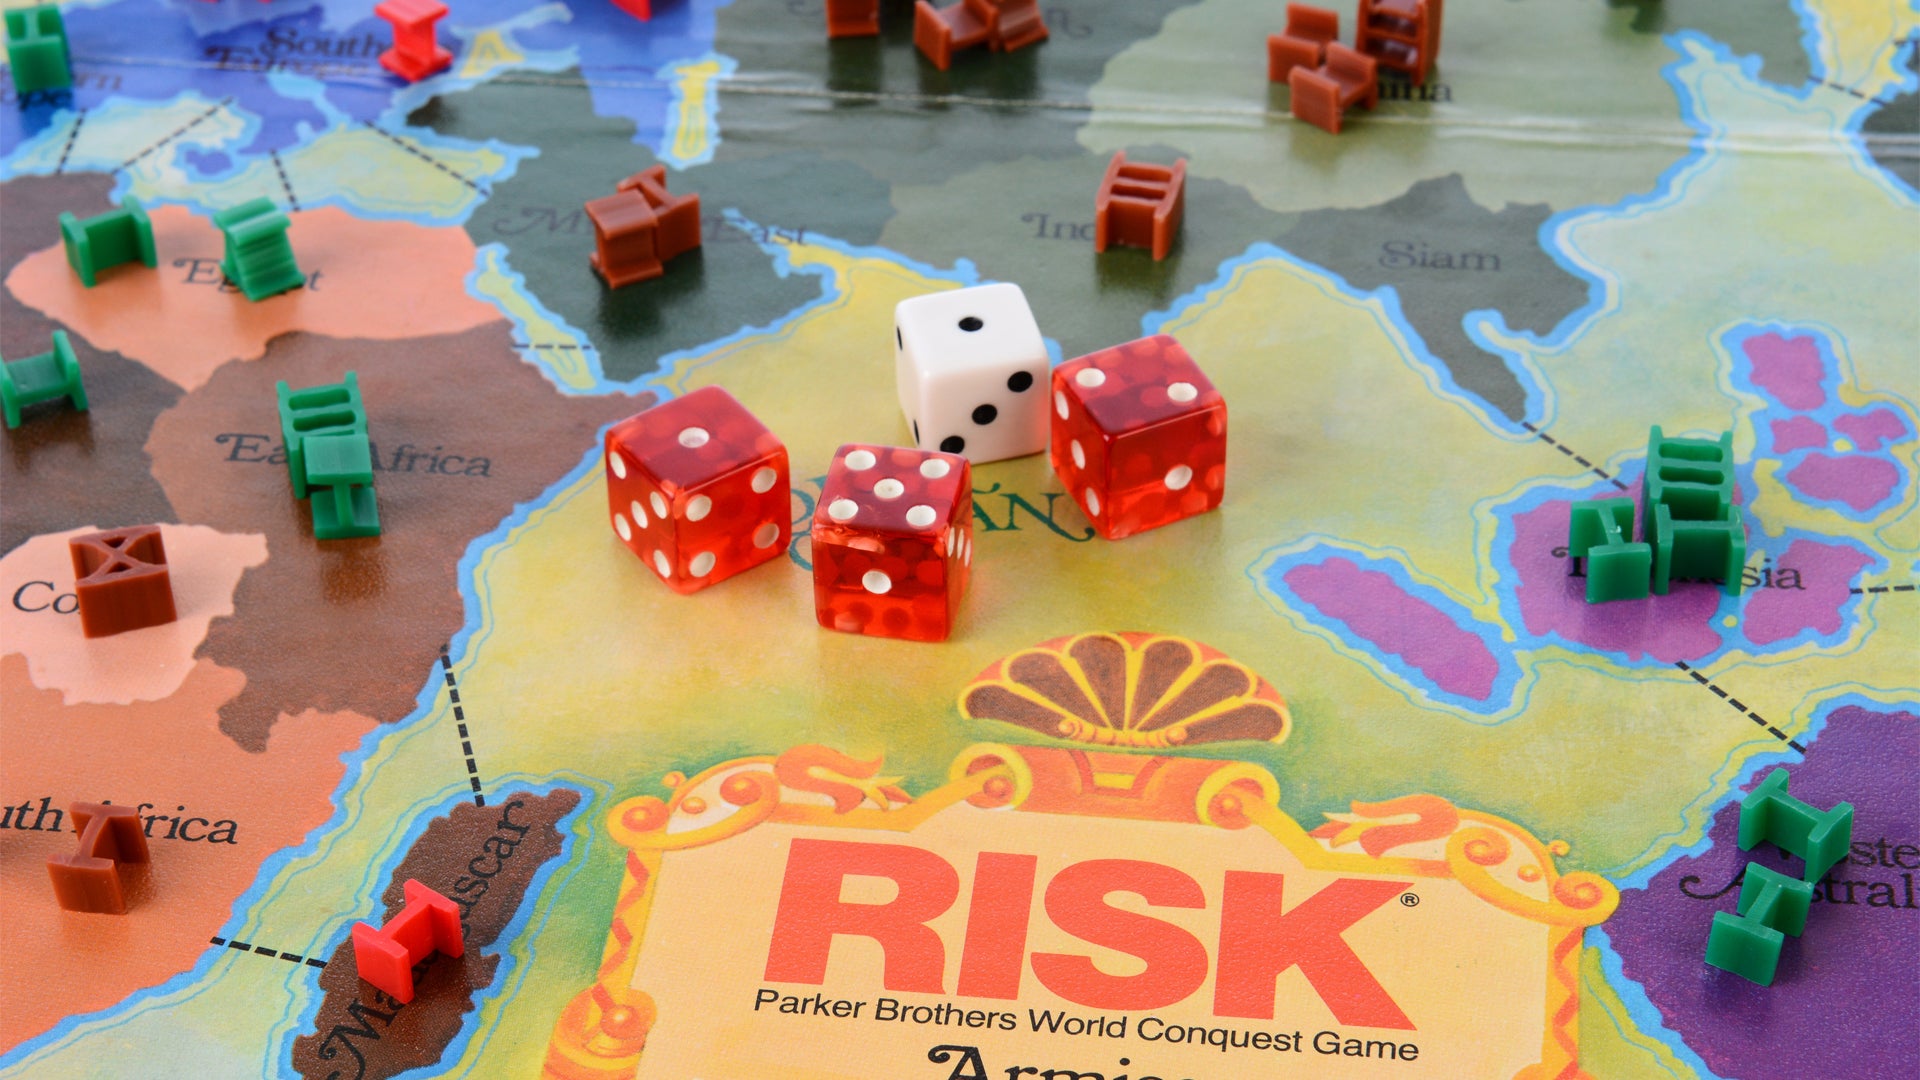 How to play Risk - Bạn muốn tìm hiểu cách chơi game Risk nhưng không biết bắt đầu từ đâu? Với những quy tắc đơn giản và dễ hiểu, cách chơi game Risk không hề khó khăn như bạn nghĩ. Hãy đảm bảo bạn hiểu rõ từng luật chơi và thực hành nhiều hơn để trở thành một người chơi giỏi.